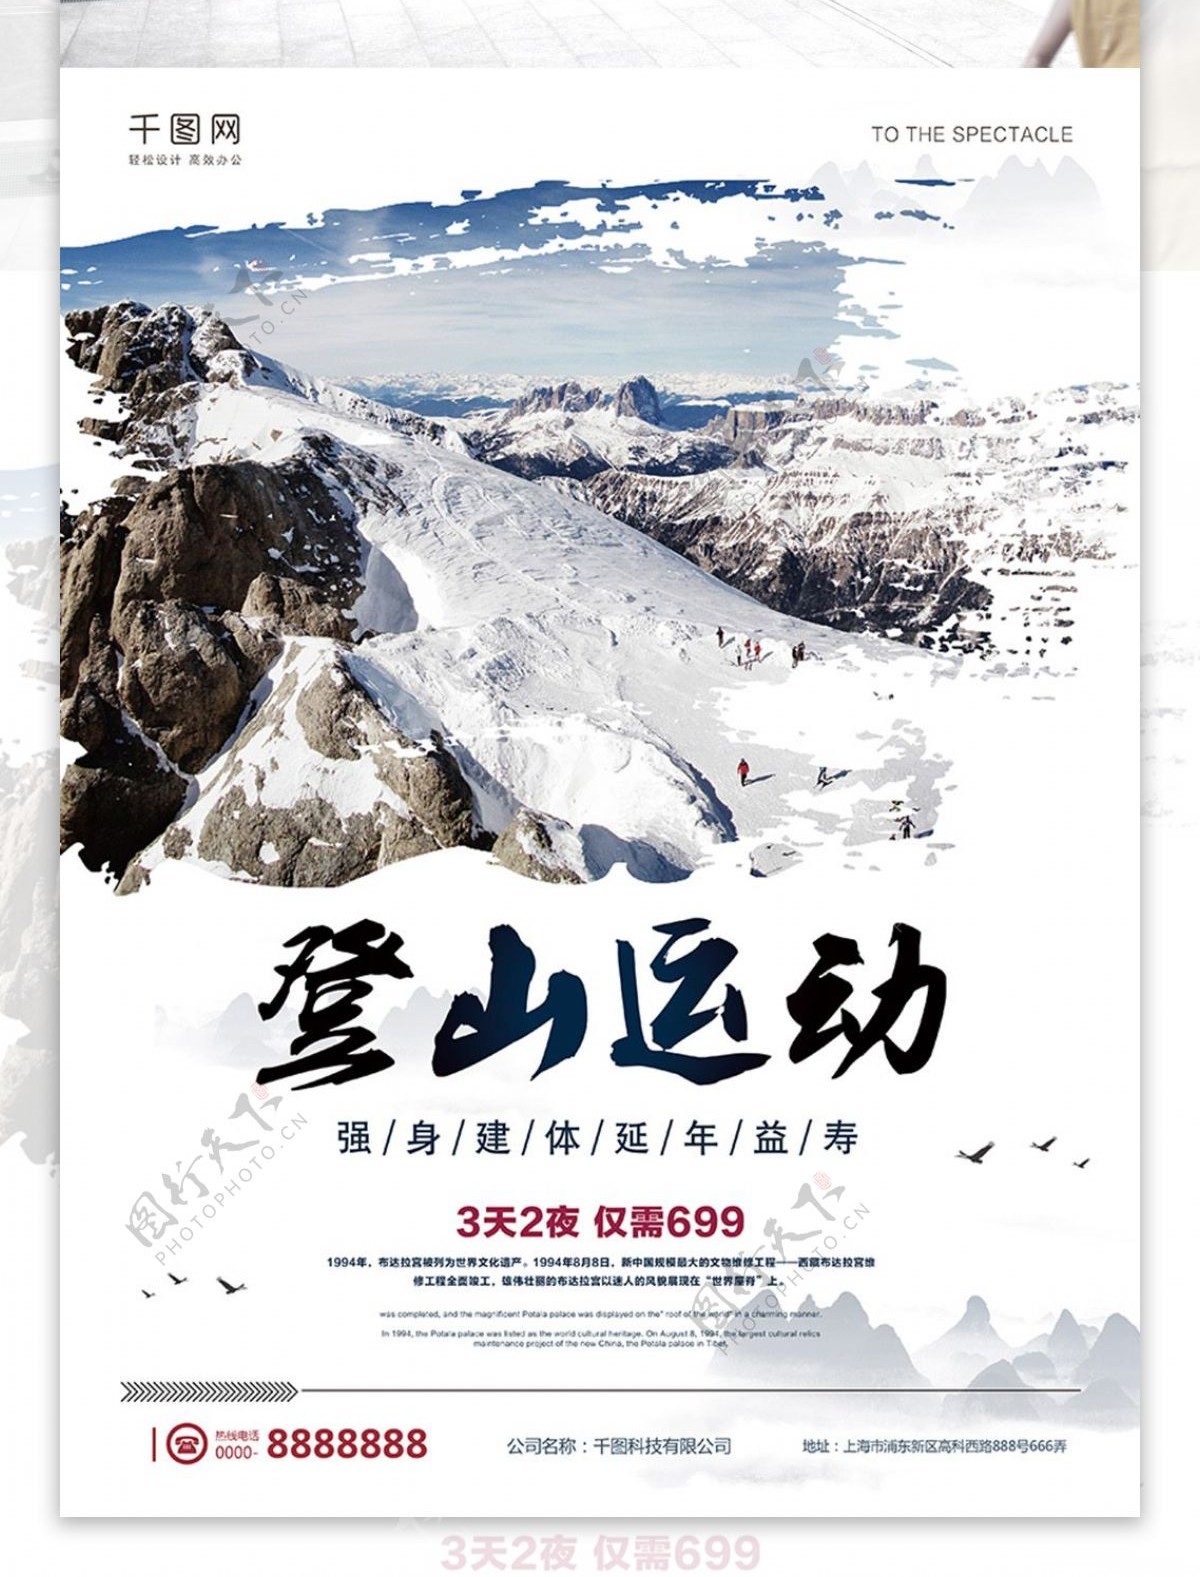 简约大气风格登山运动宣传海报